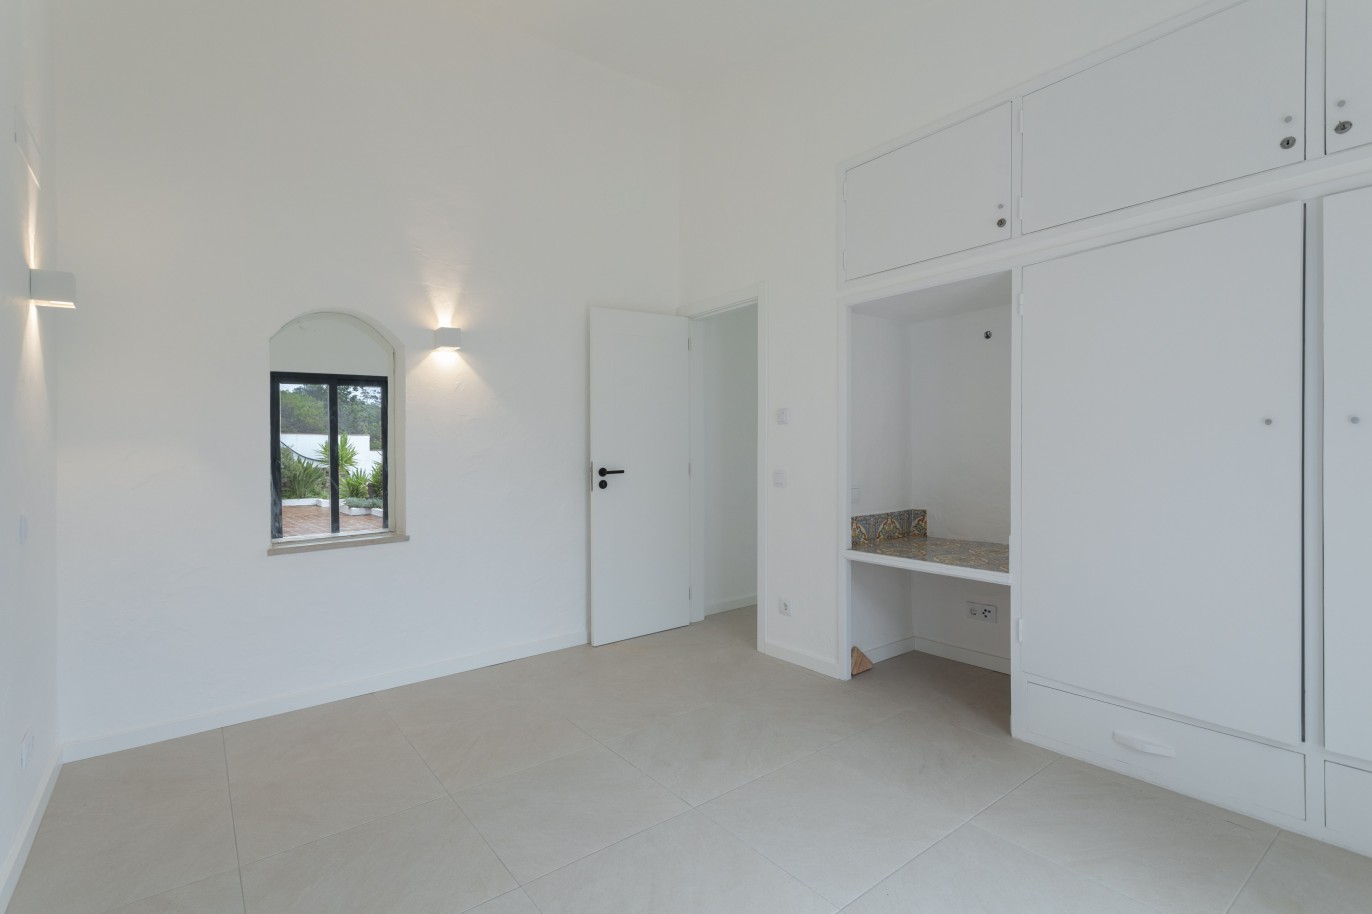 3 bedroom villa with sea view and pool, for sale in Santa Barbara, Algarve_245050